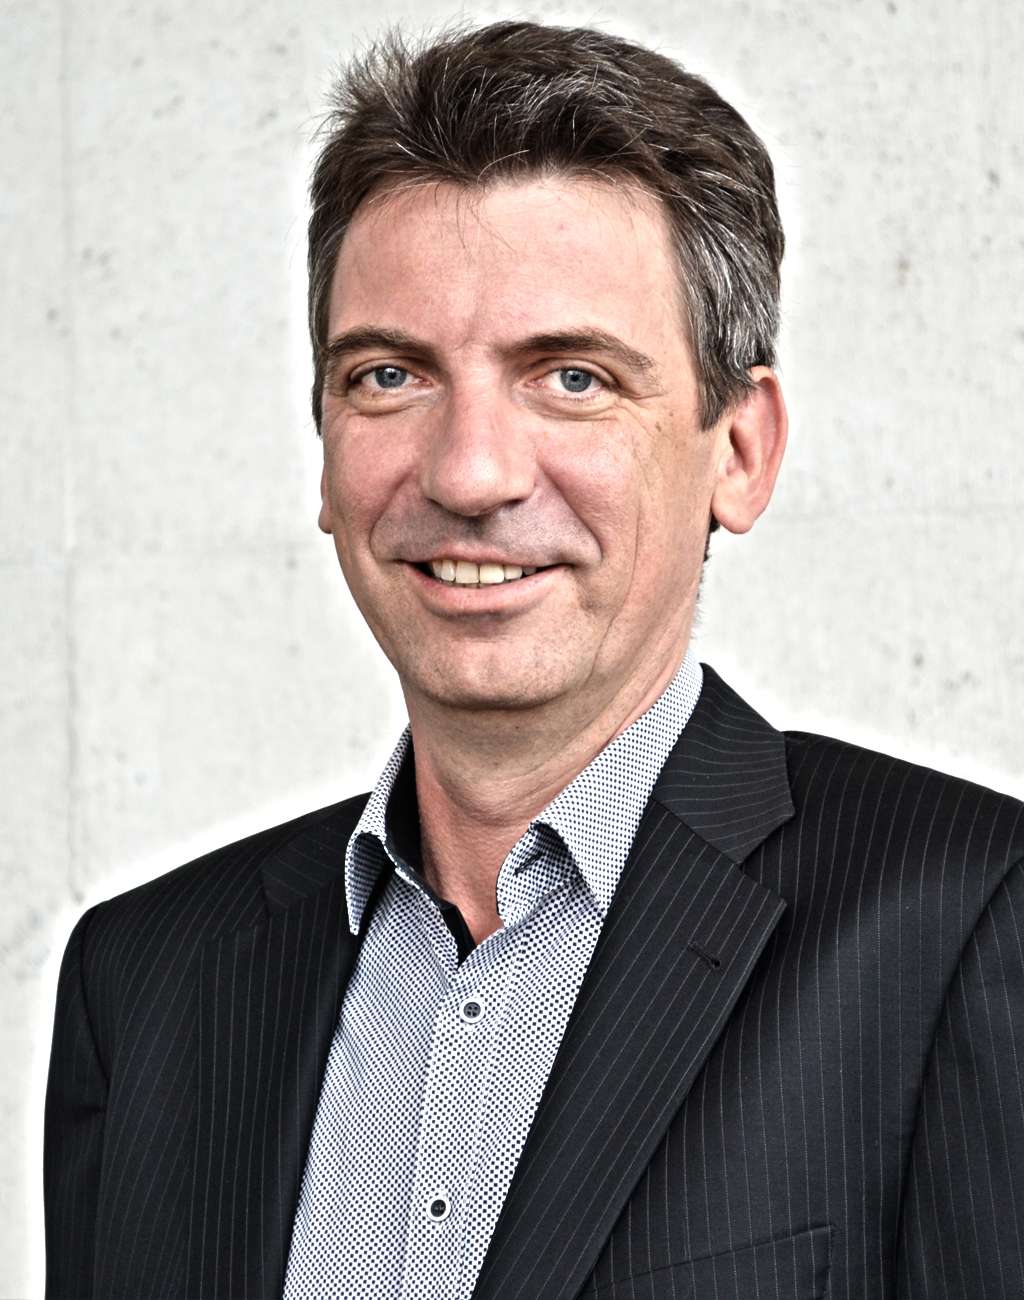 Kay-Ingo Greve, CEO